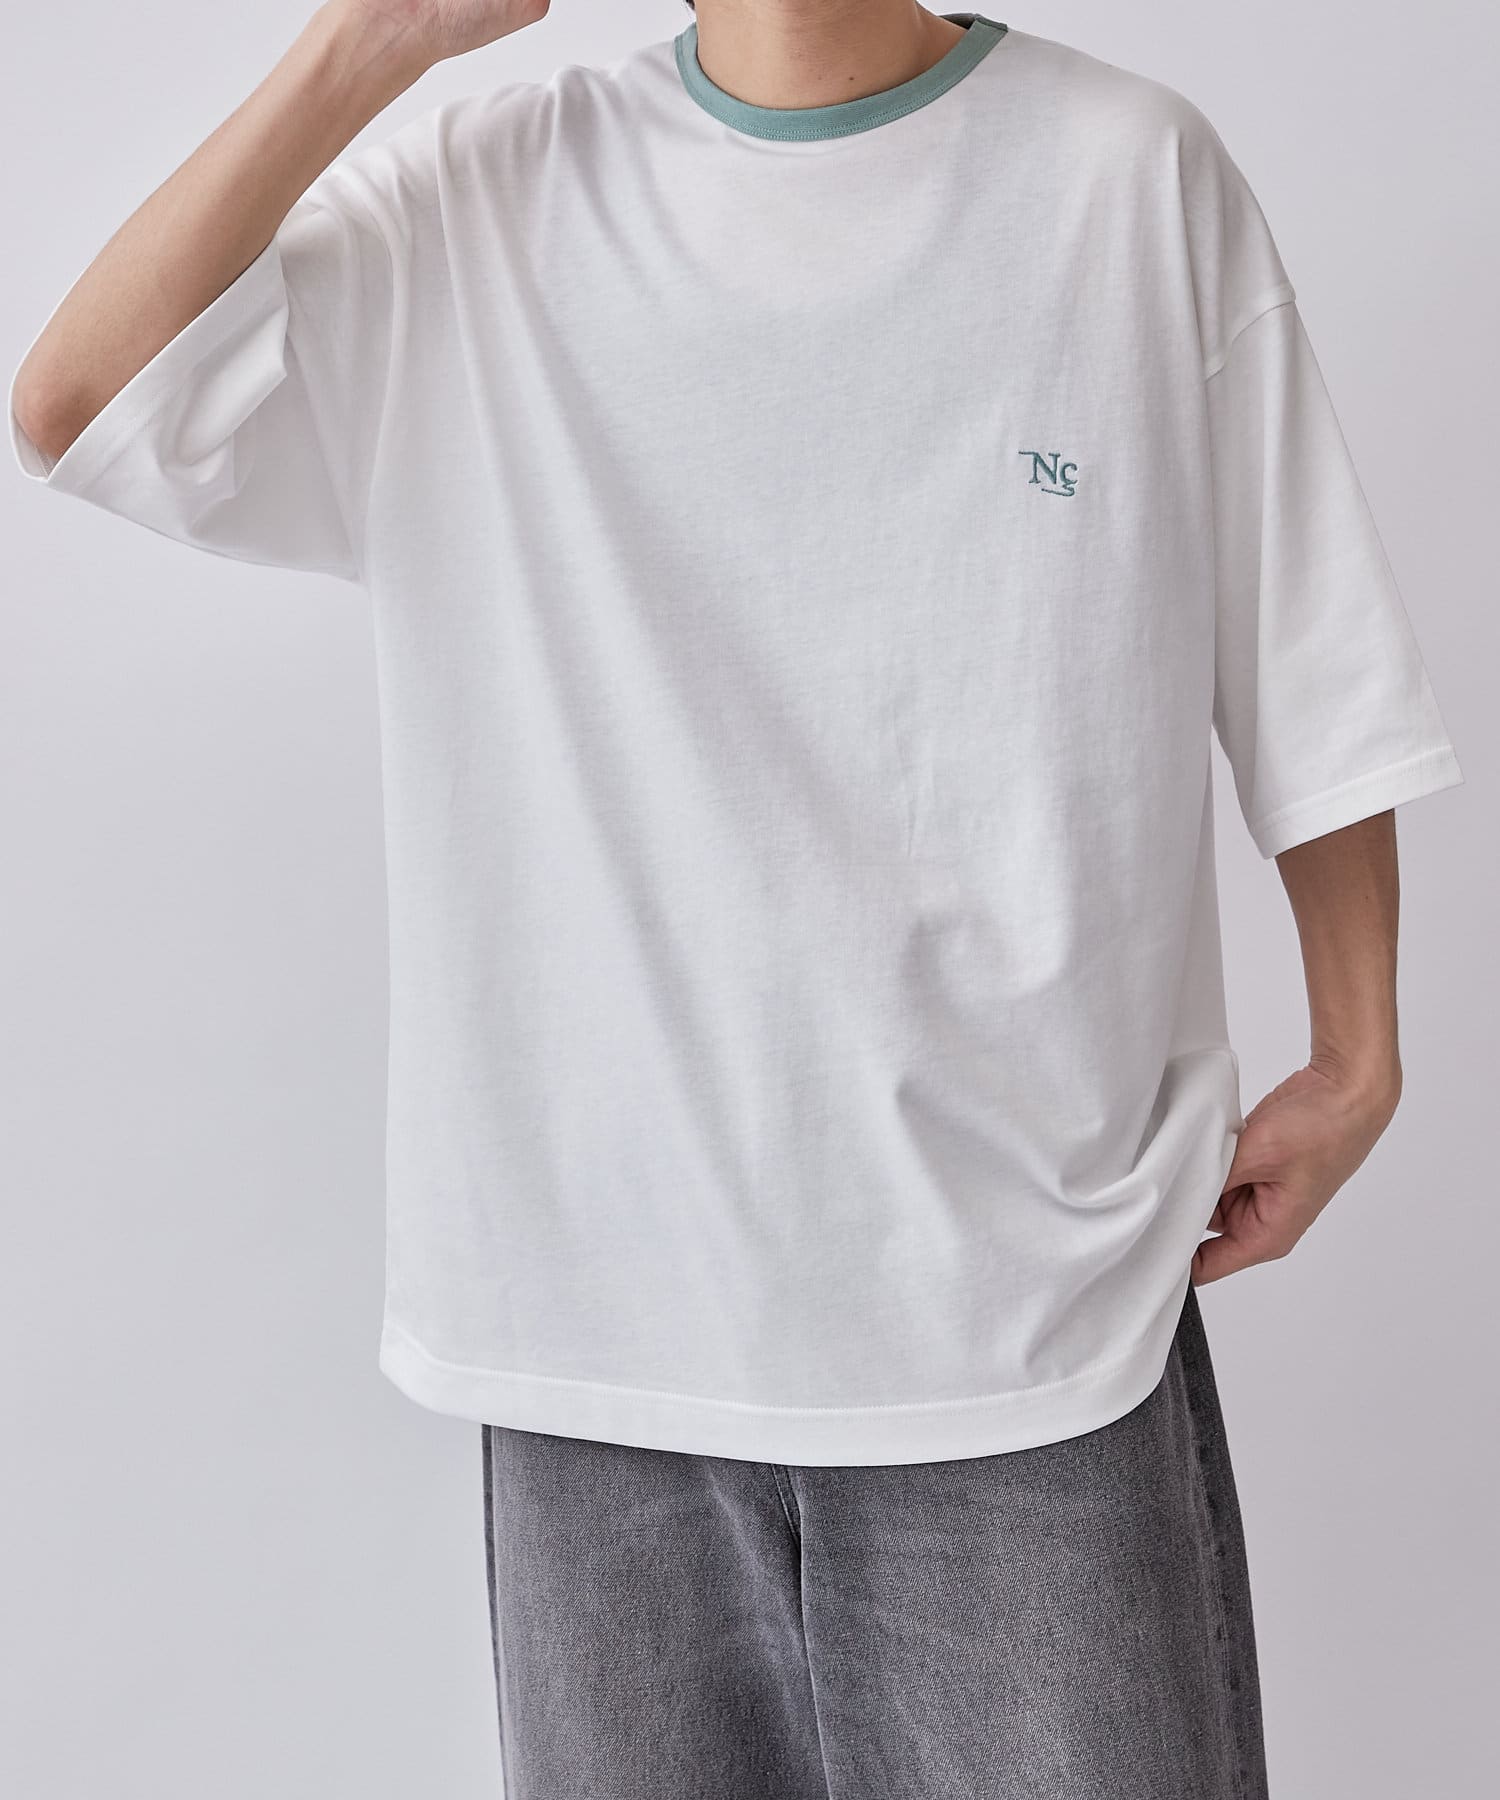 Neucon / ニューコン】23SS リンガー刺繍ルーズフィットTシャツ 